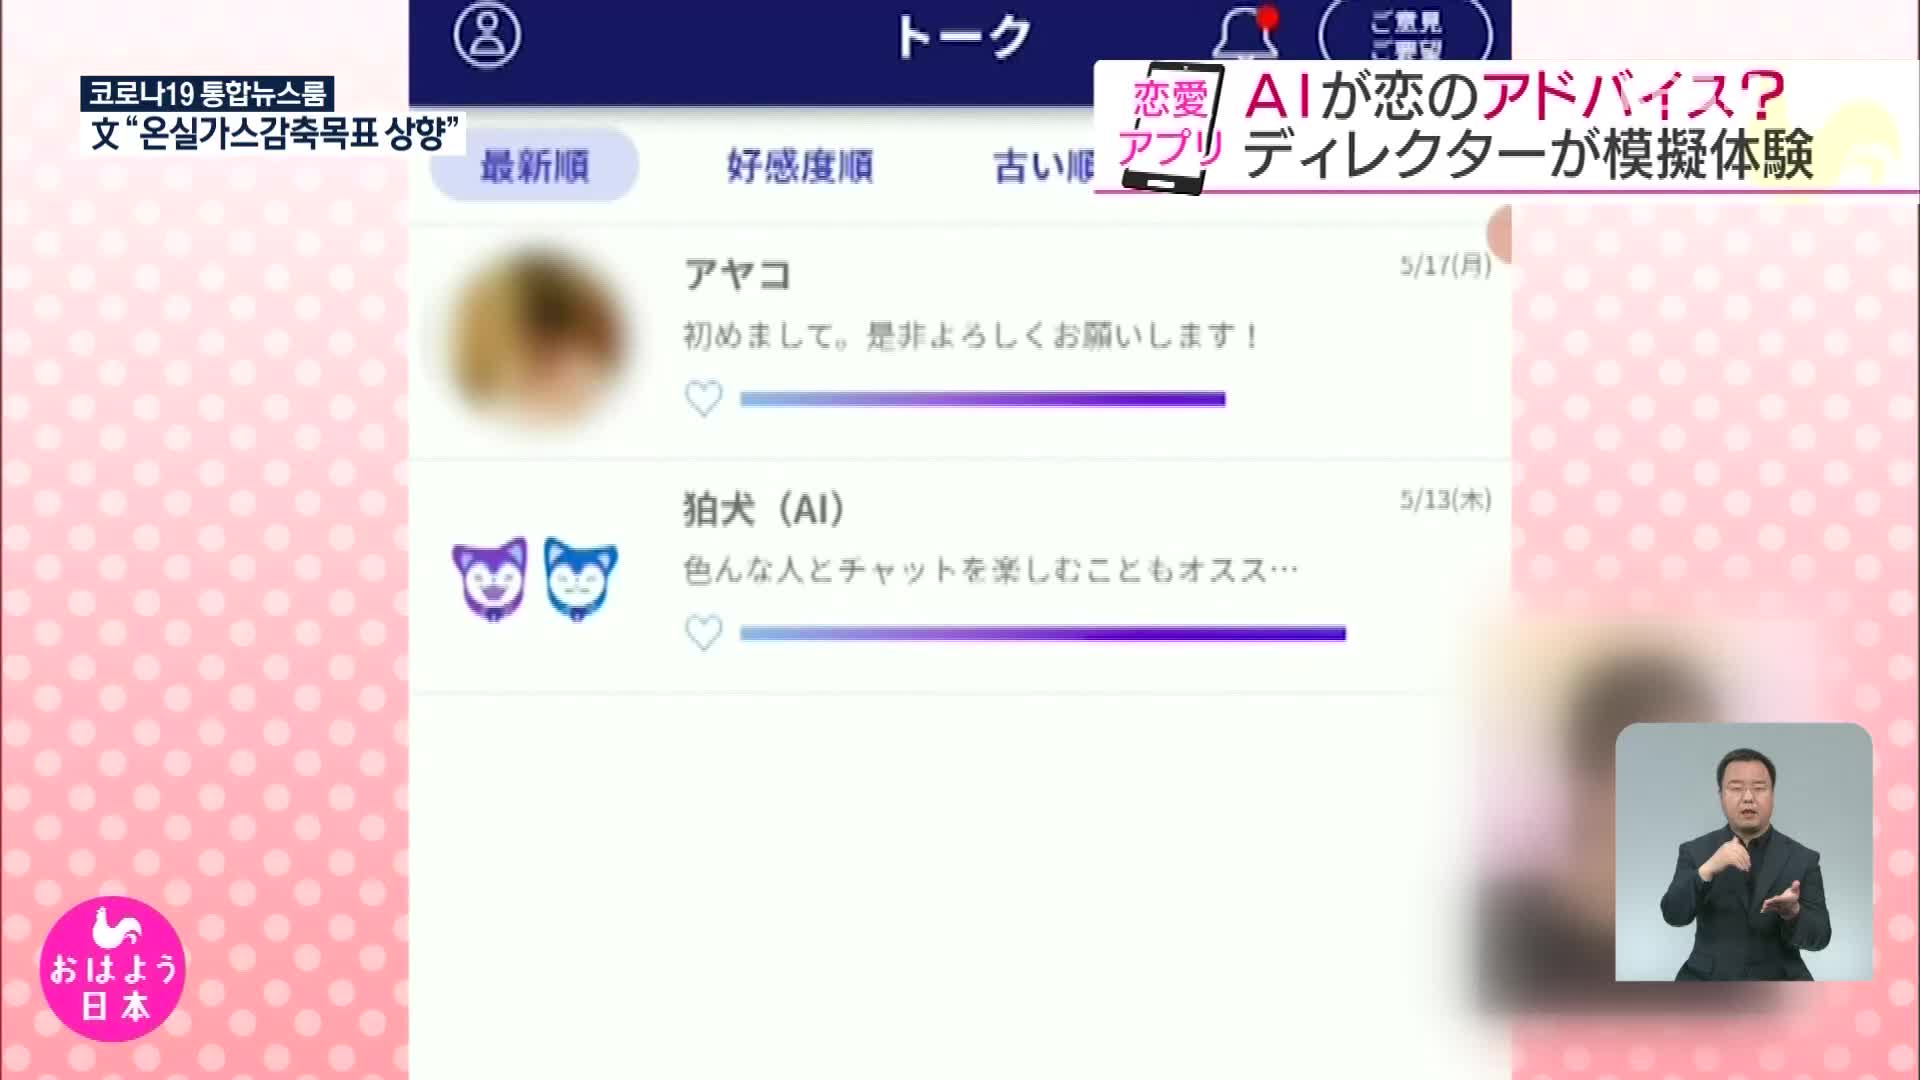 일본, AI가 조언해 주는 ‘연애 애플리케이션’